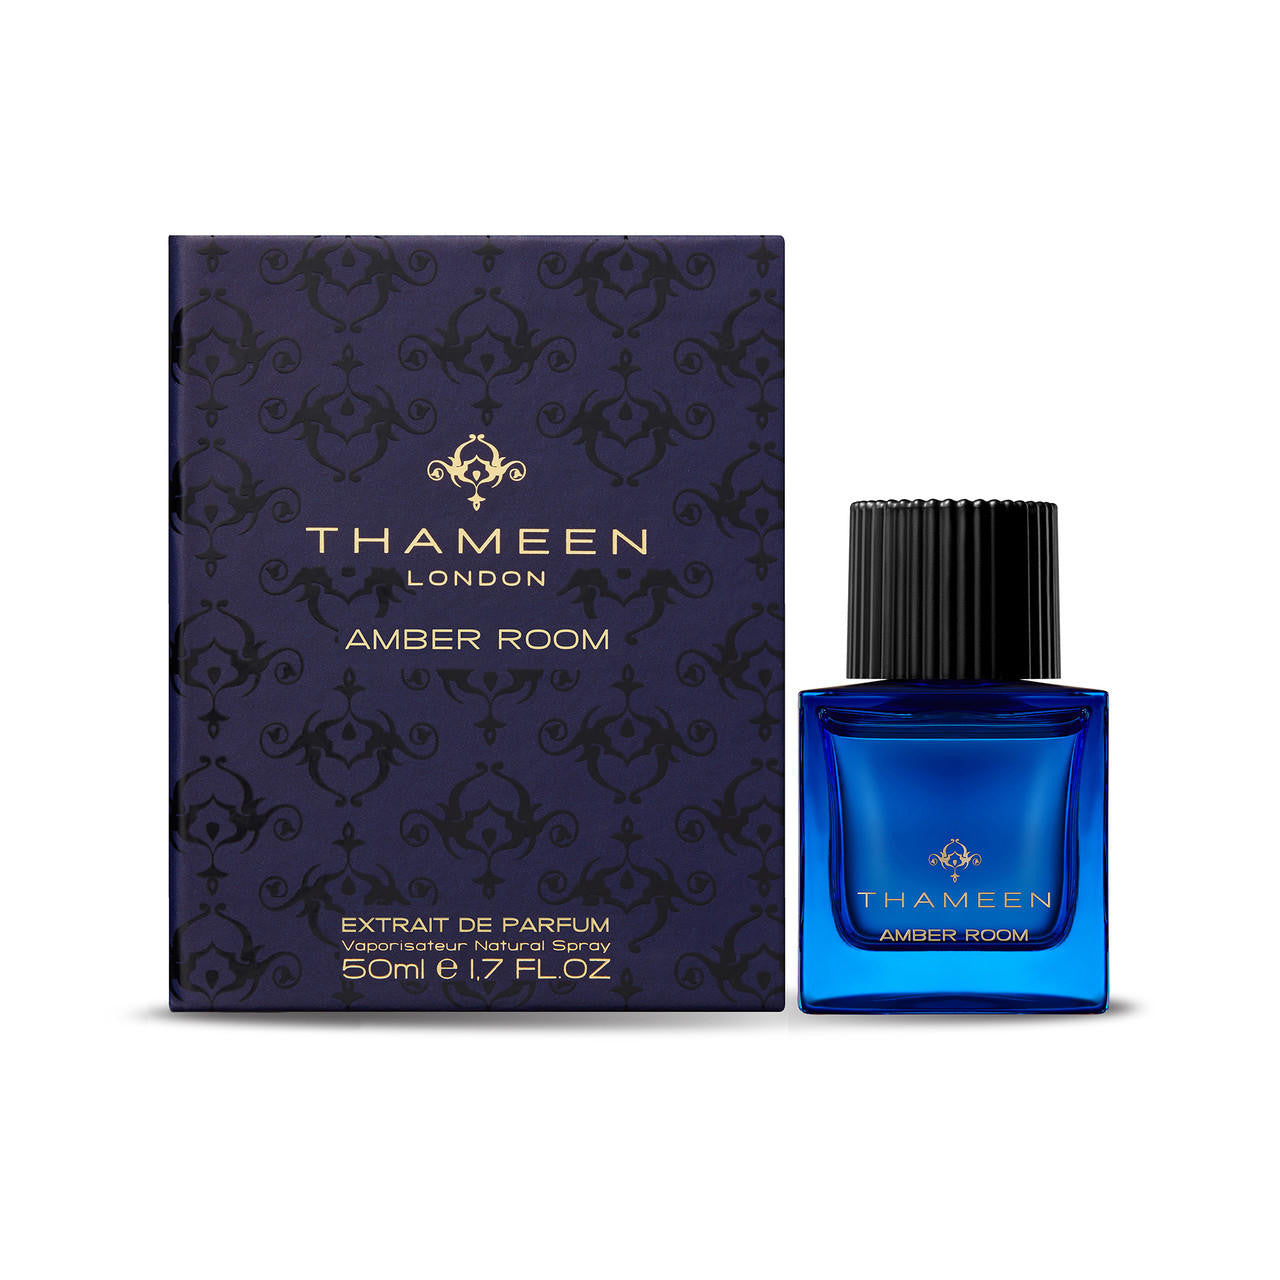  Thameen Amber Room Extrait de Parfum 